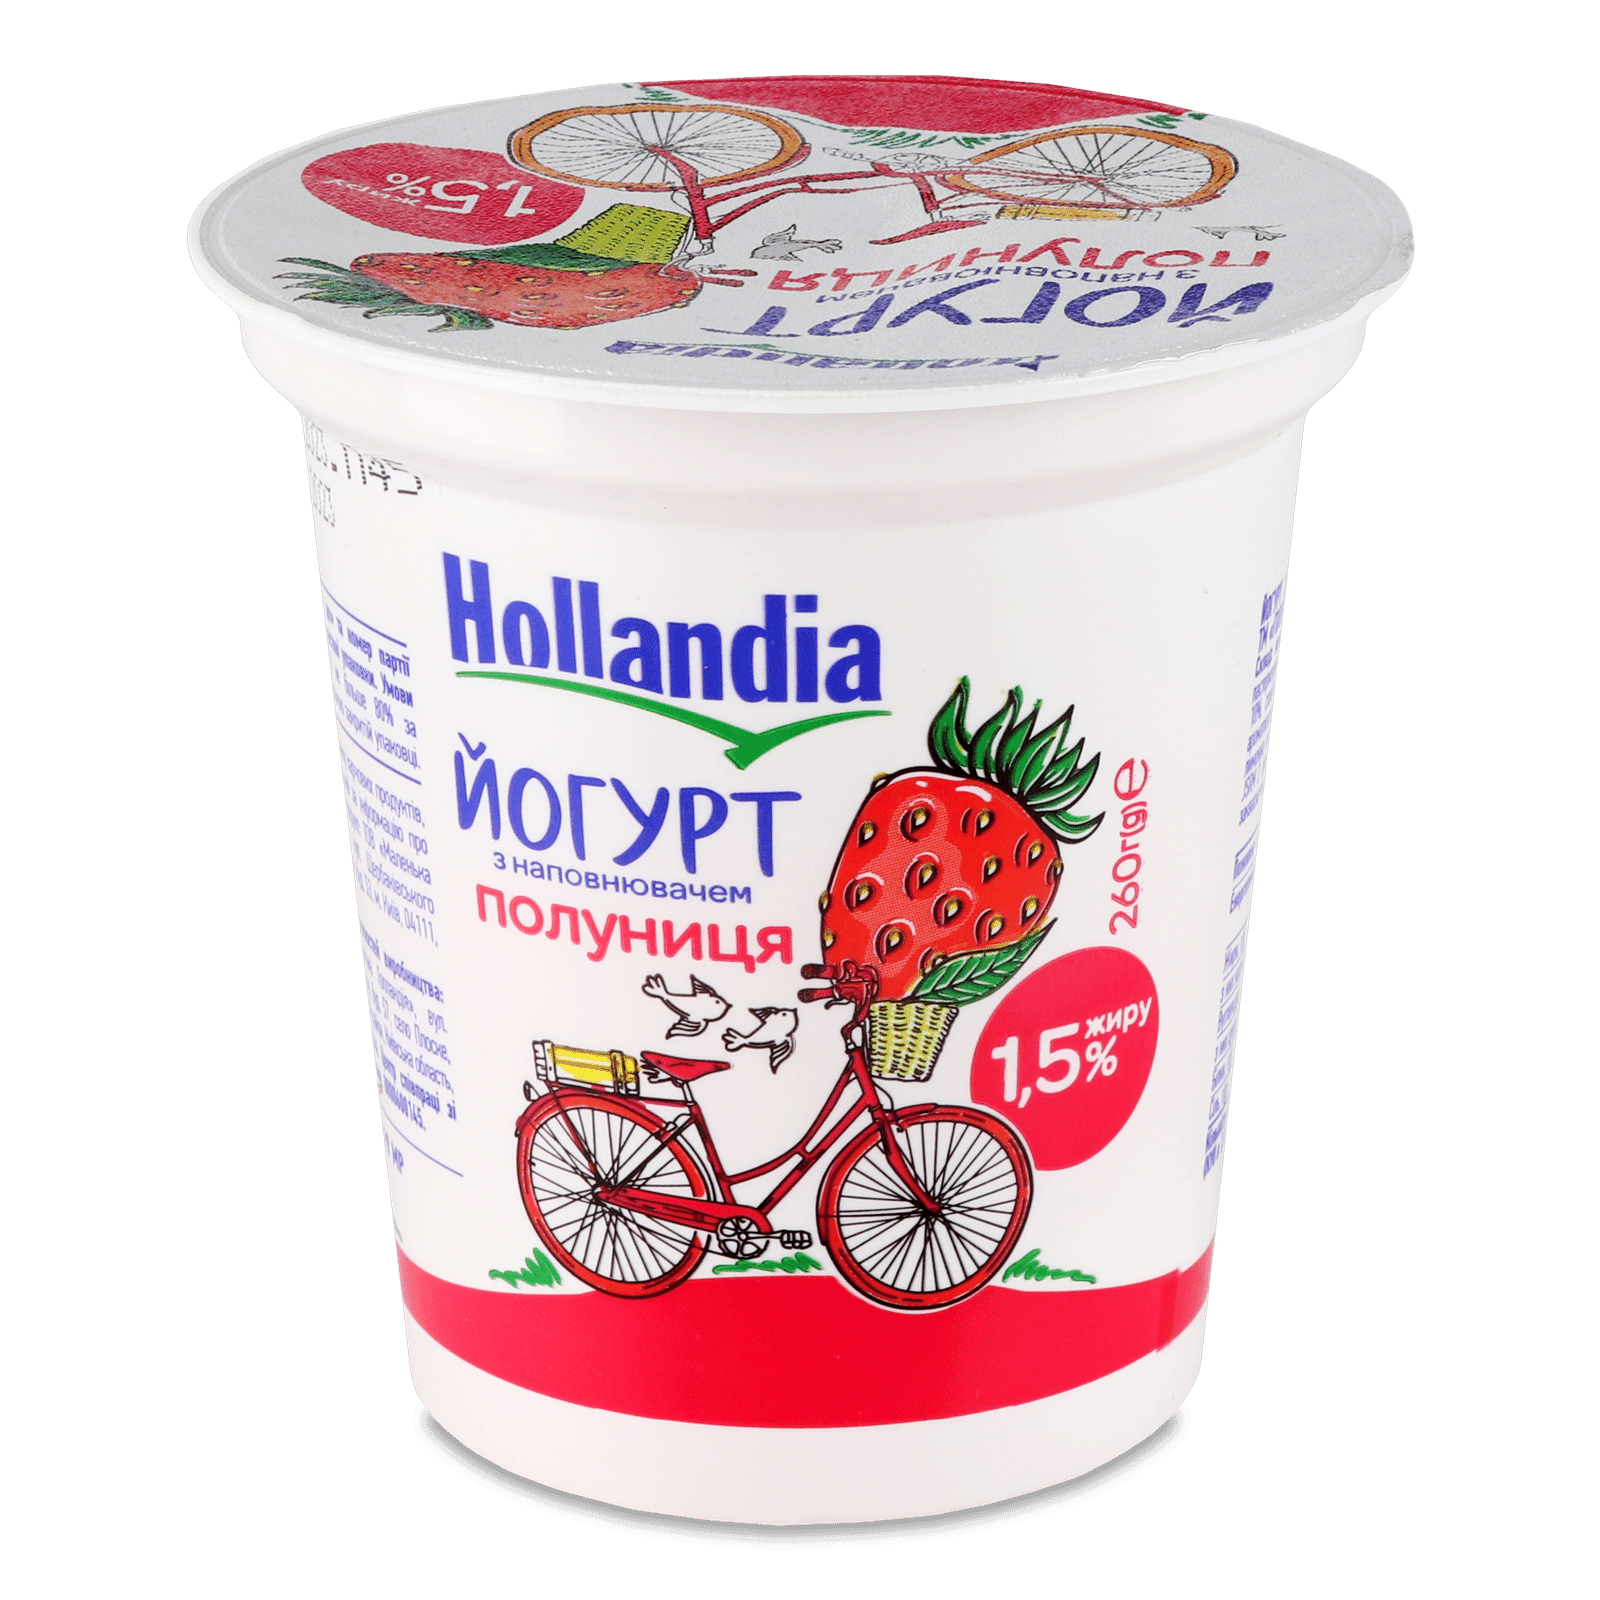 Йогурт Hollandia з наповнювачем полуниця 1.5% - 1